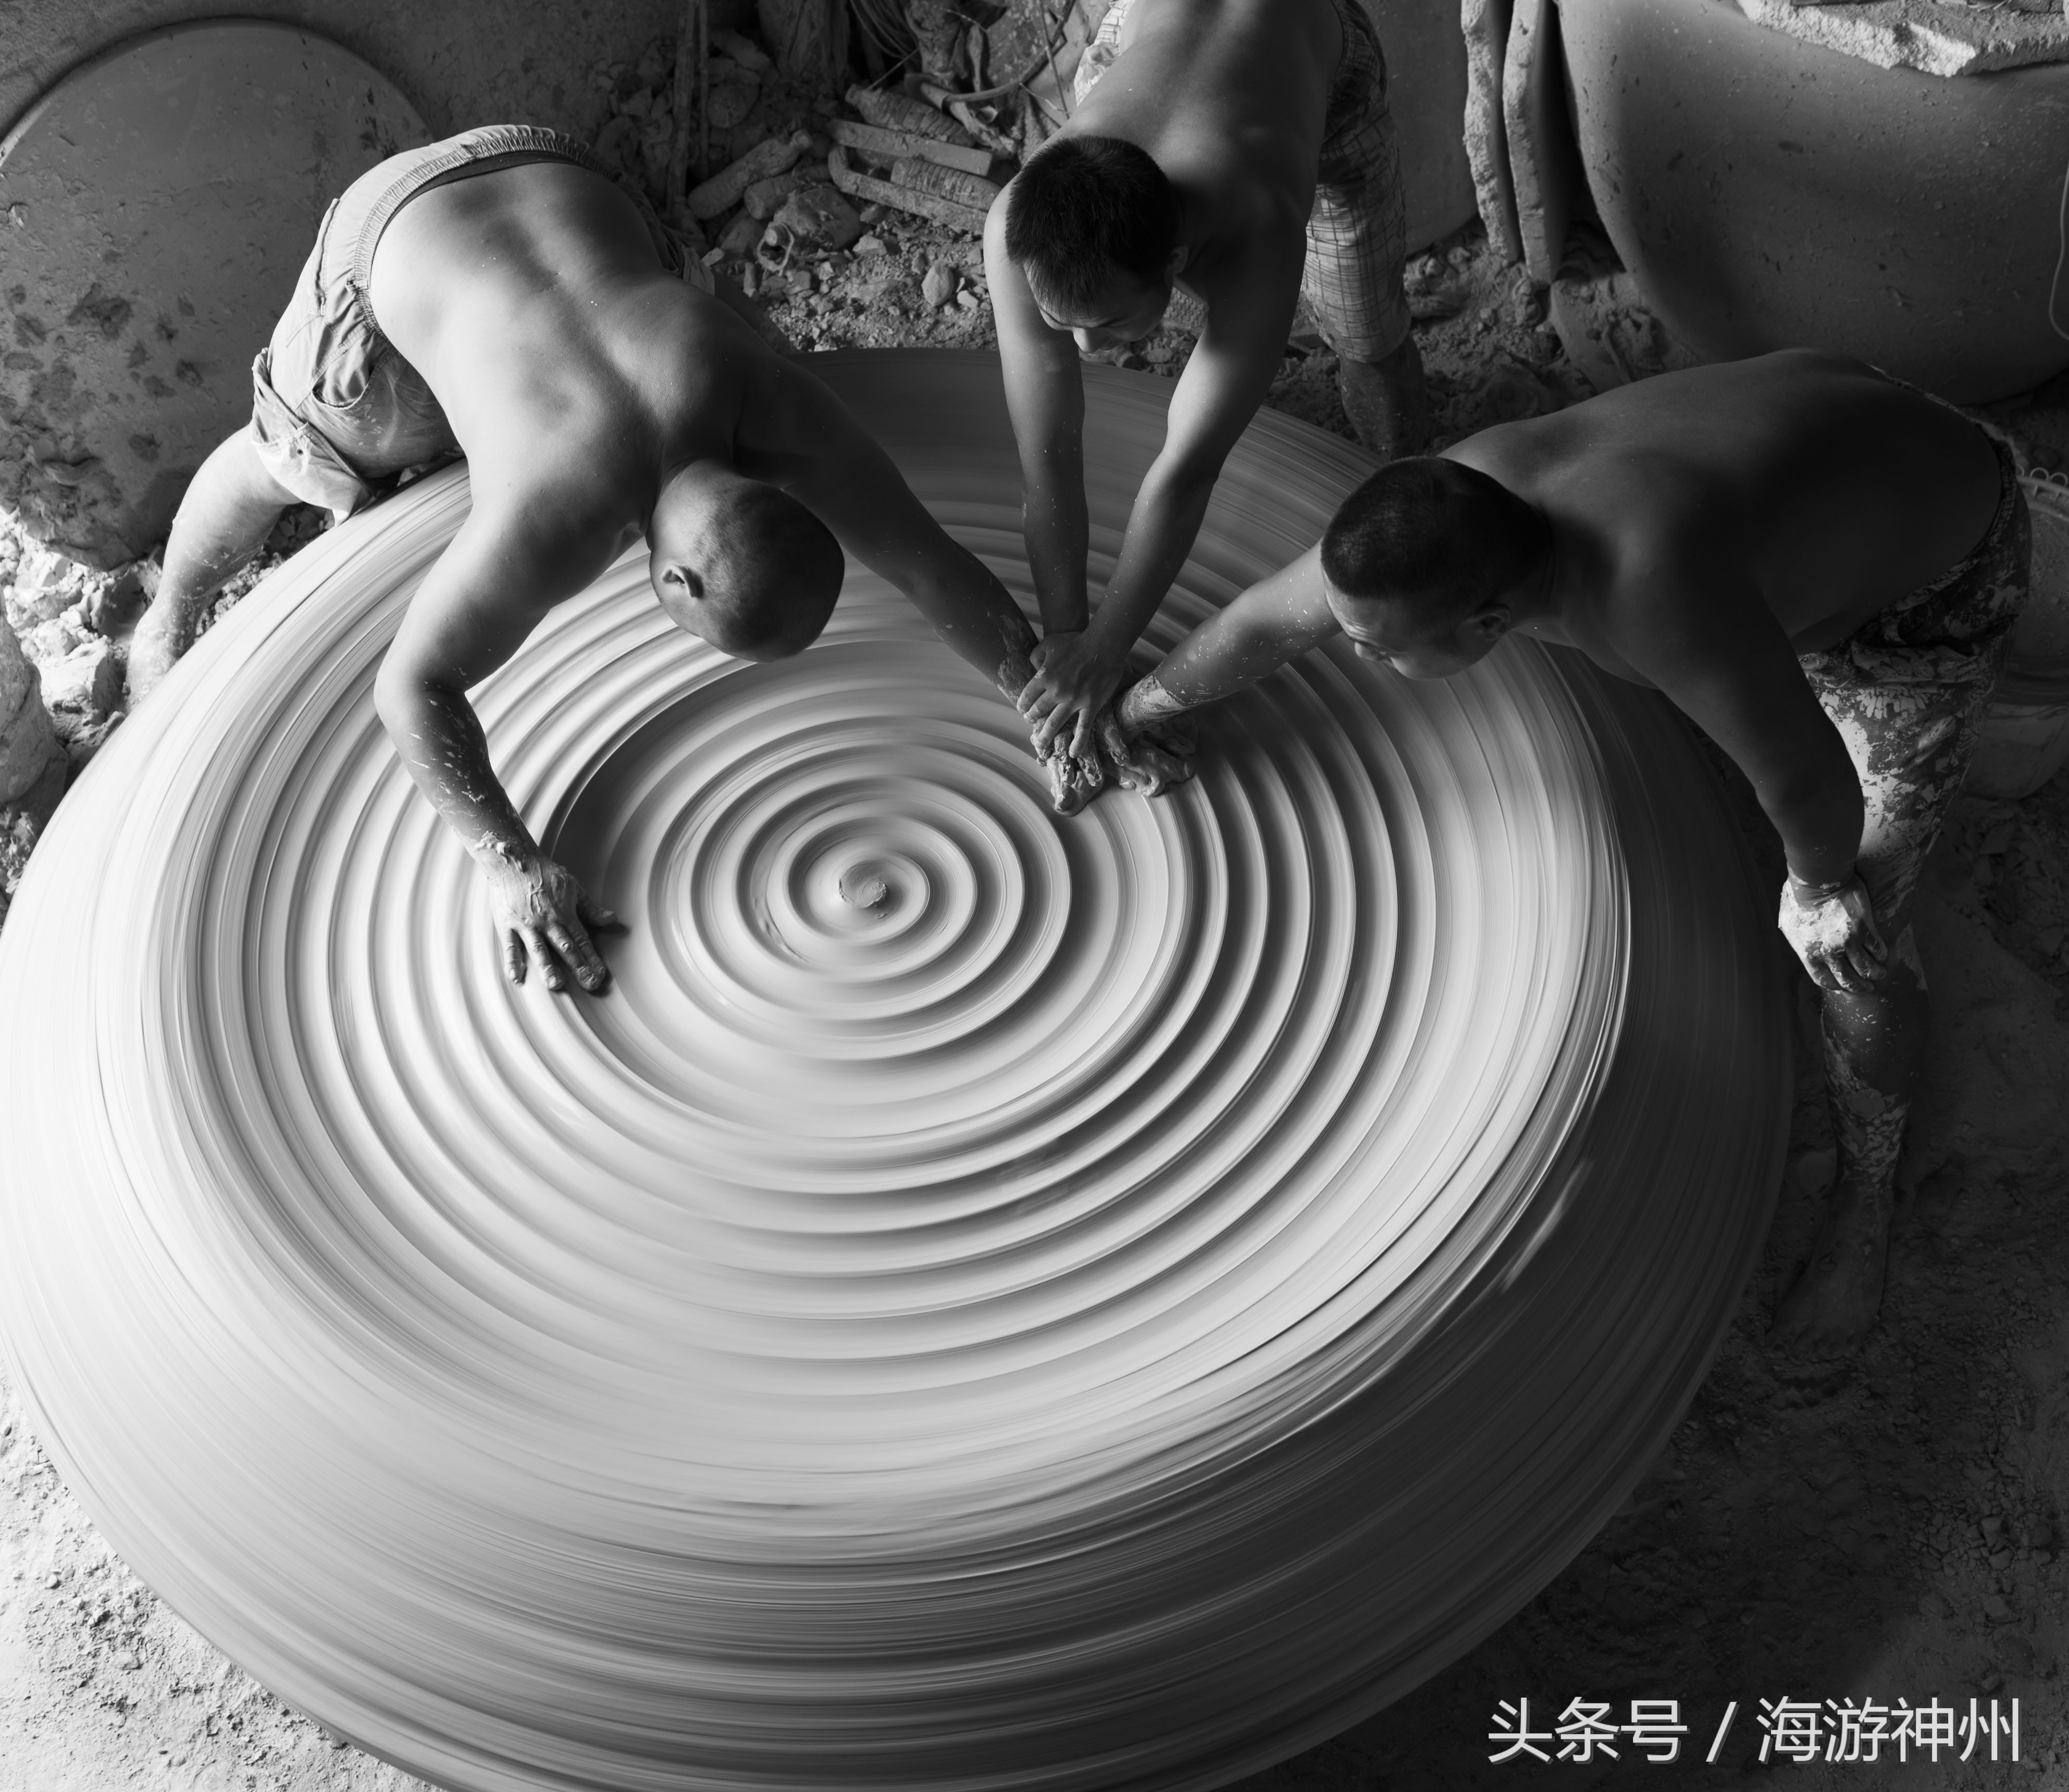 景德镇陶瓷产业发展充满活力